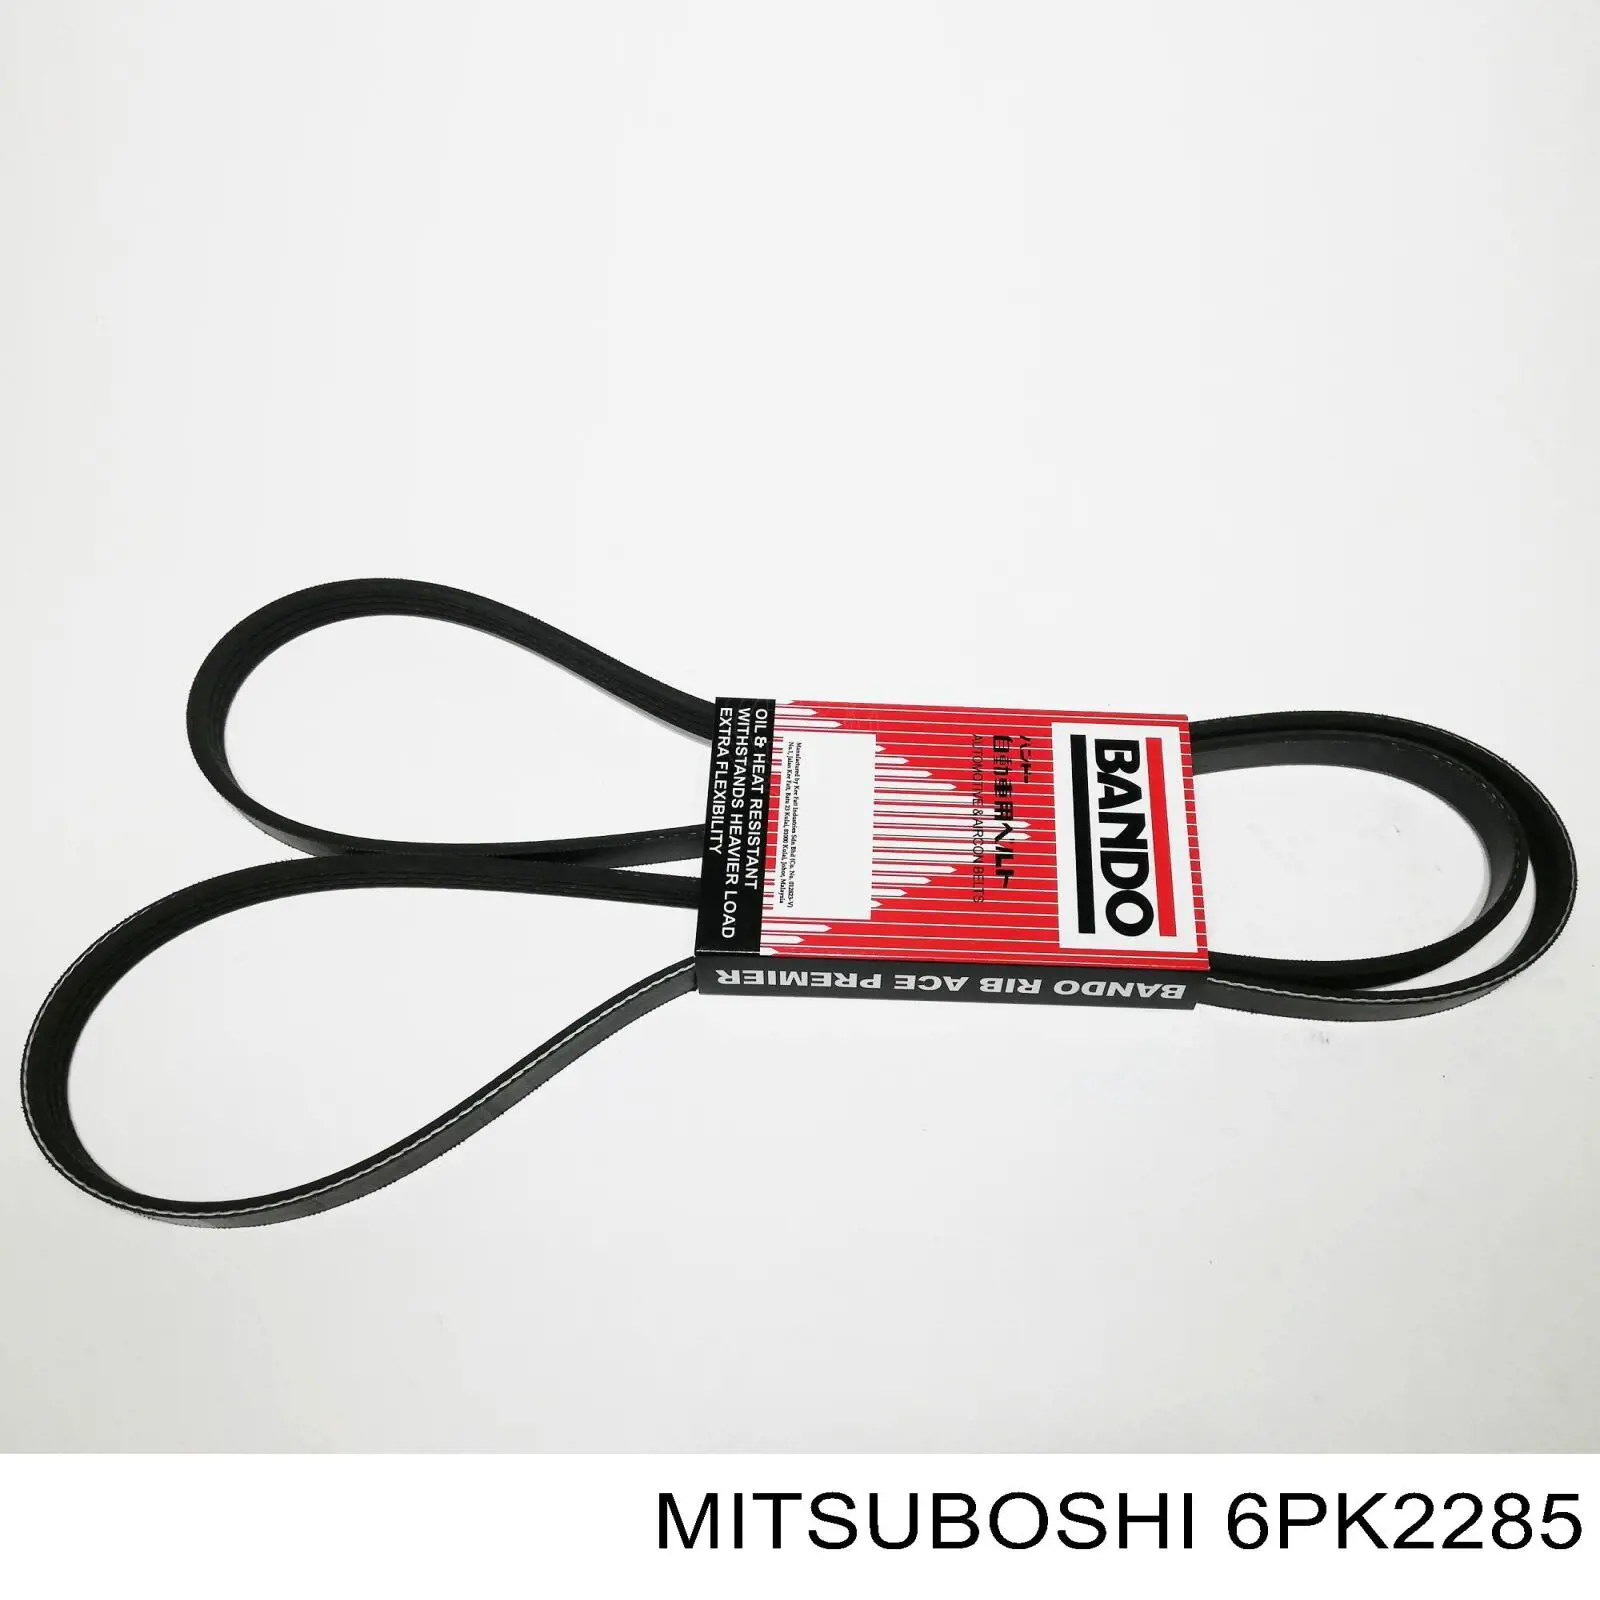 6PK2285 Mitsuboshi correia dos conjuntos de transmissão